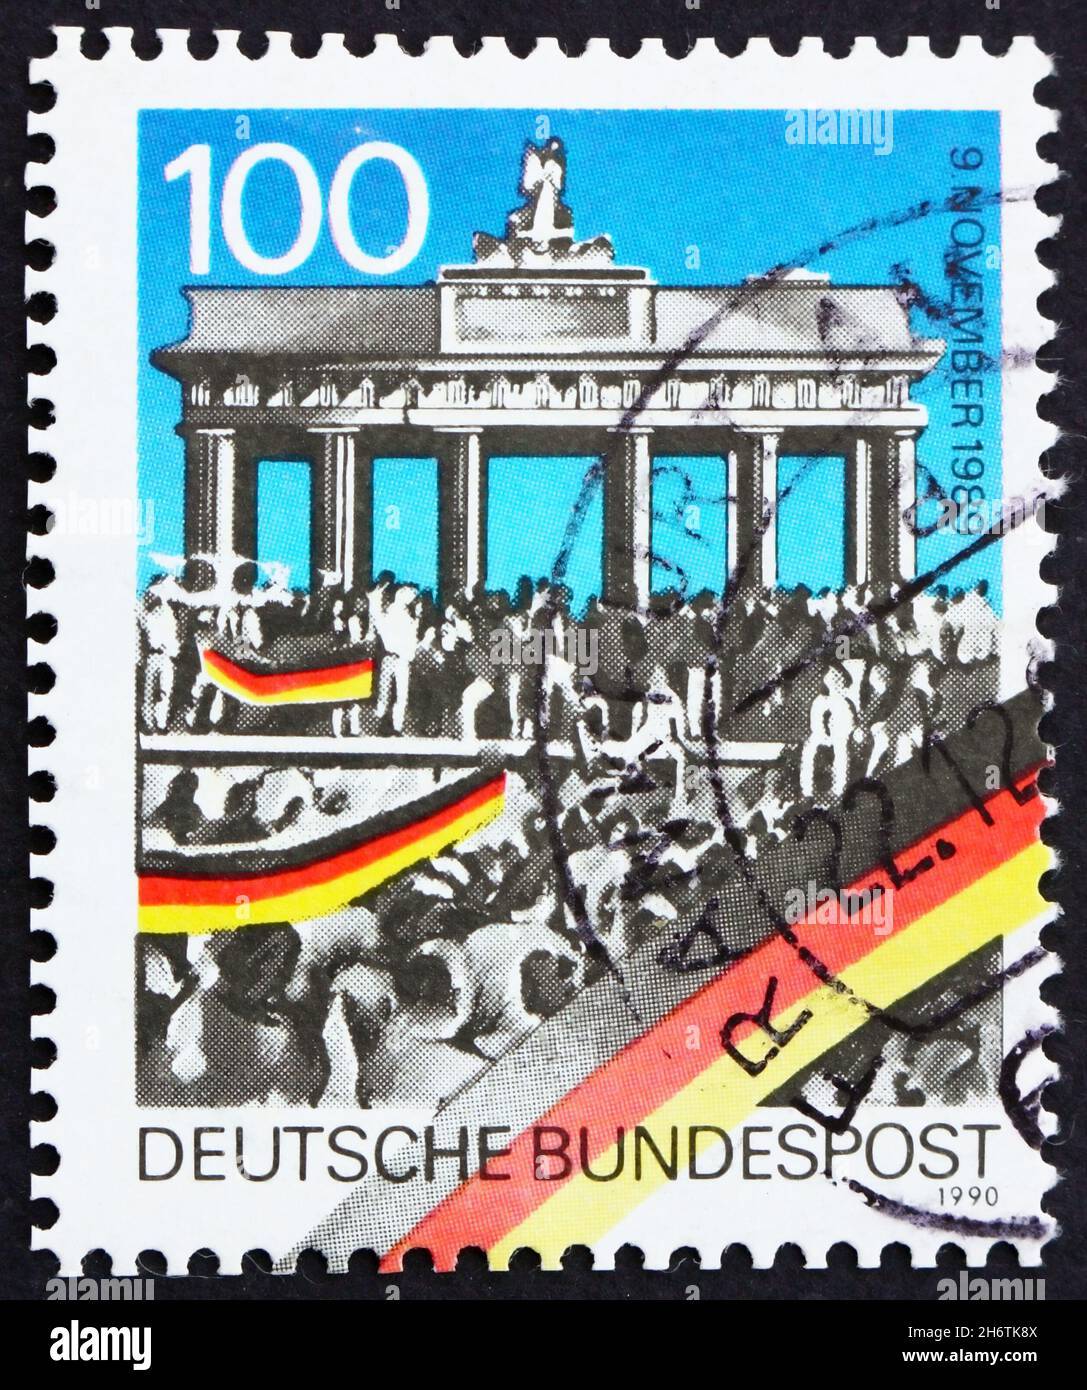 GERMANIA - CIRCA 1990: Un francobollo stampato in Germania mostra la porta di Brandeburgo, 1 ° anniversario di apertura del muro di Berlino, circa 1990 Foto Stock